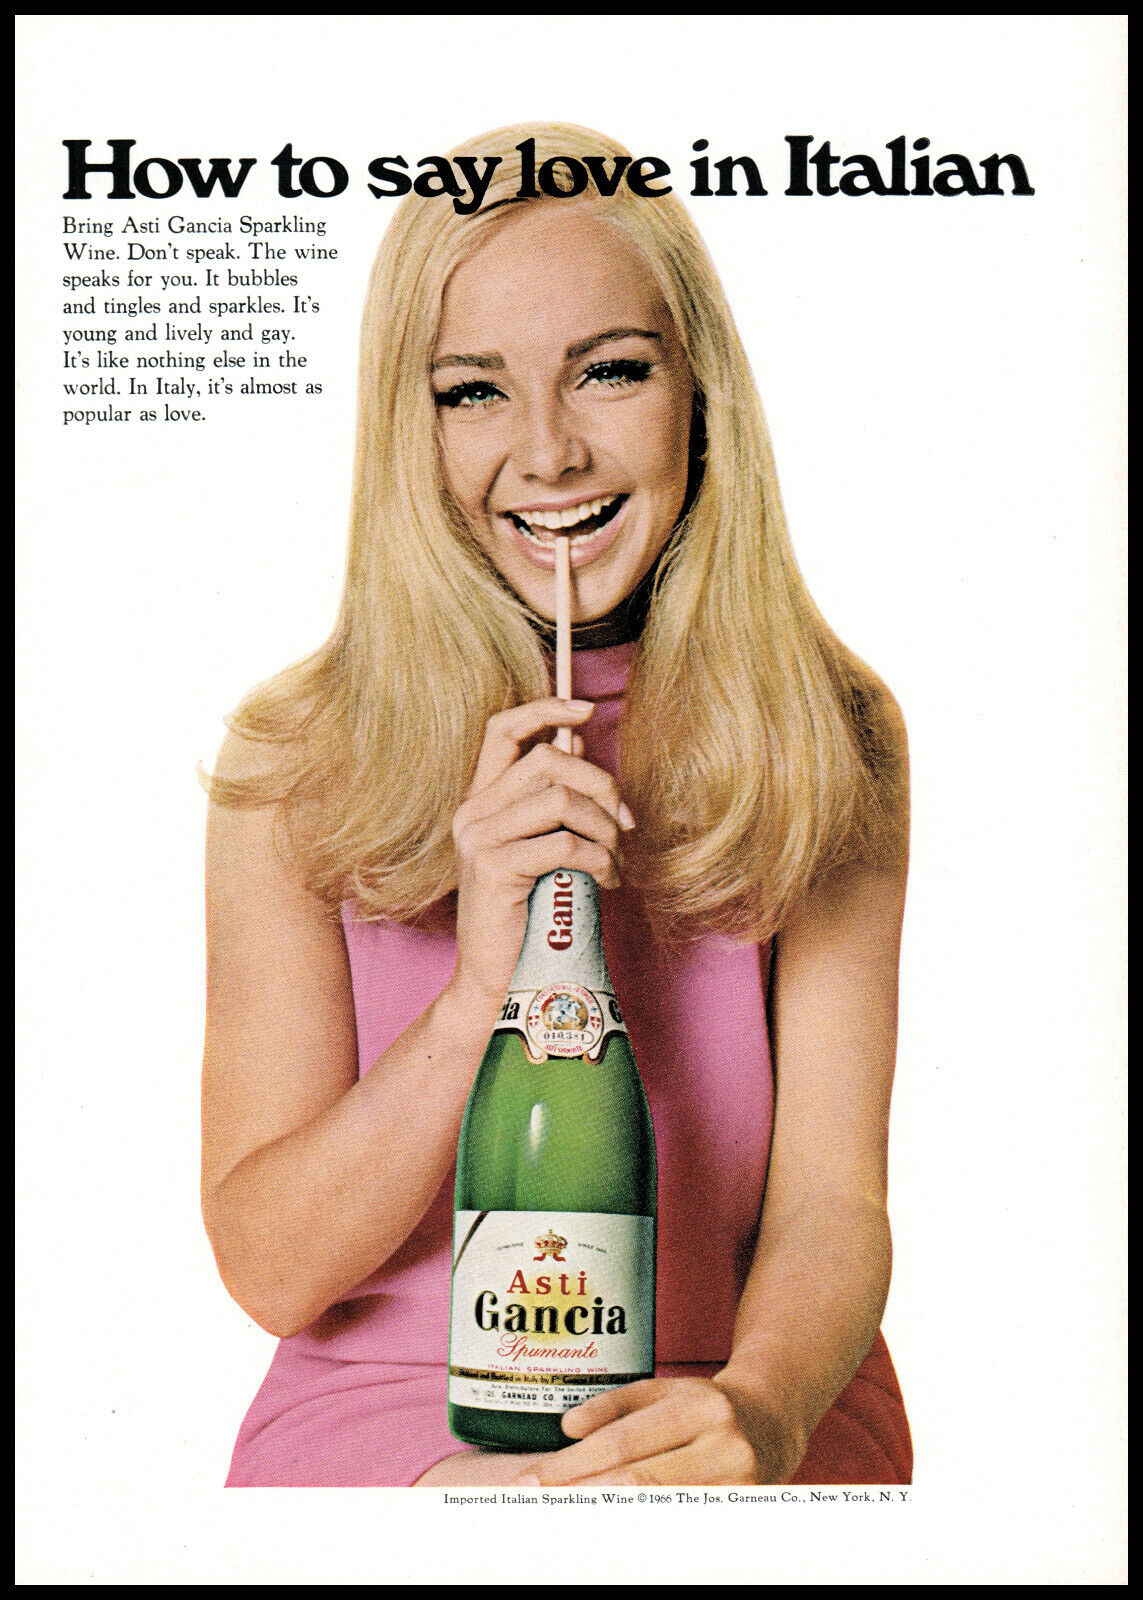 1967 Asti Gancia Sparkling Wine Pretty Blonde Girl Photo Retro Print Ad S27